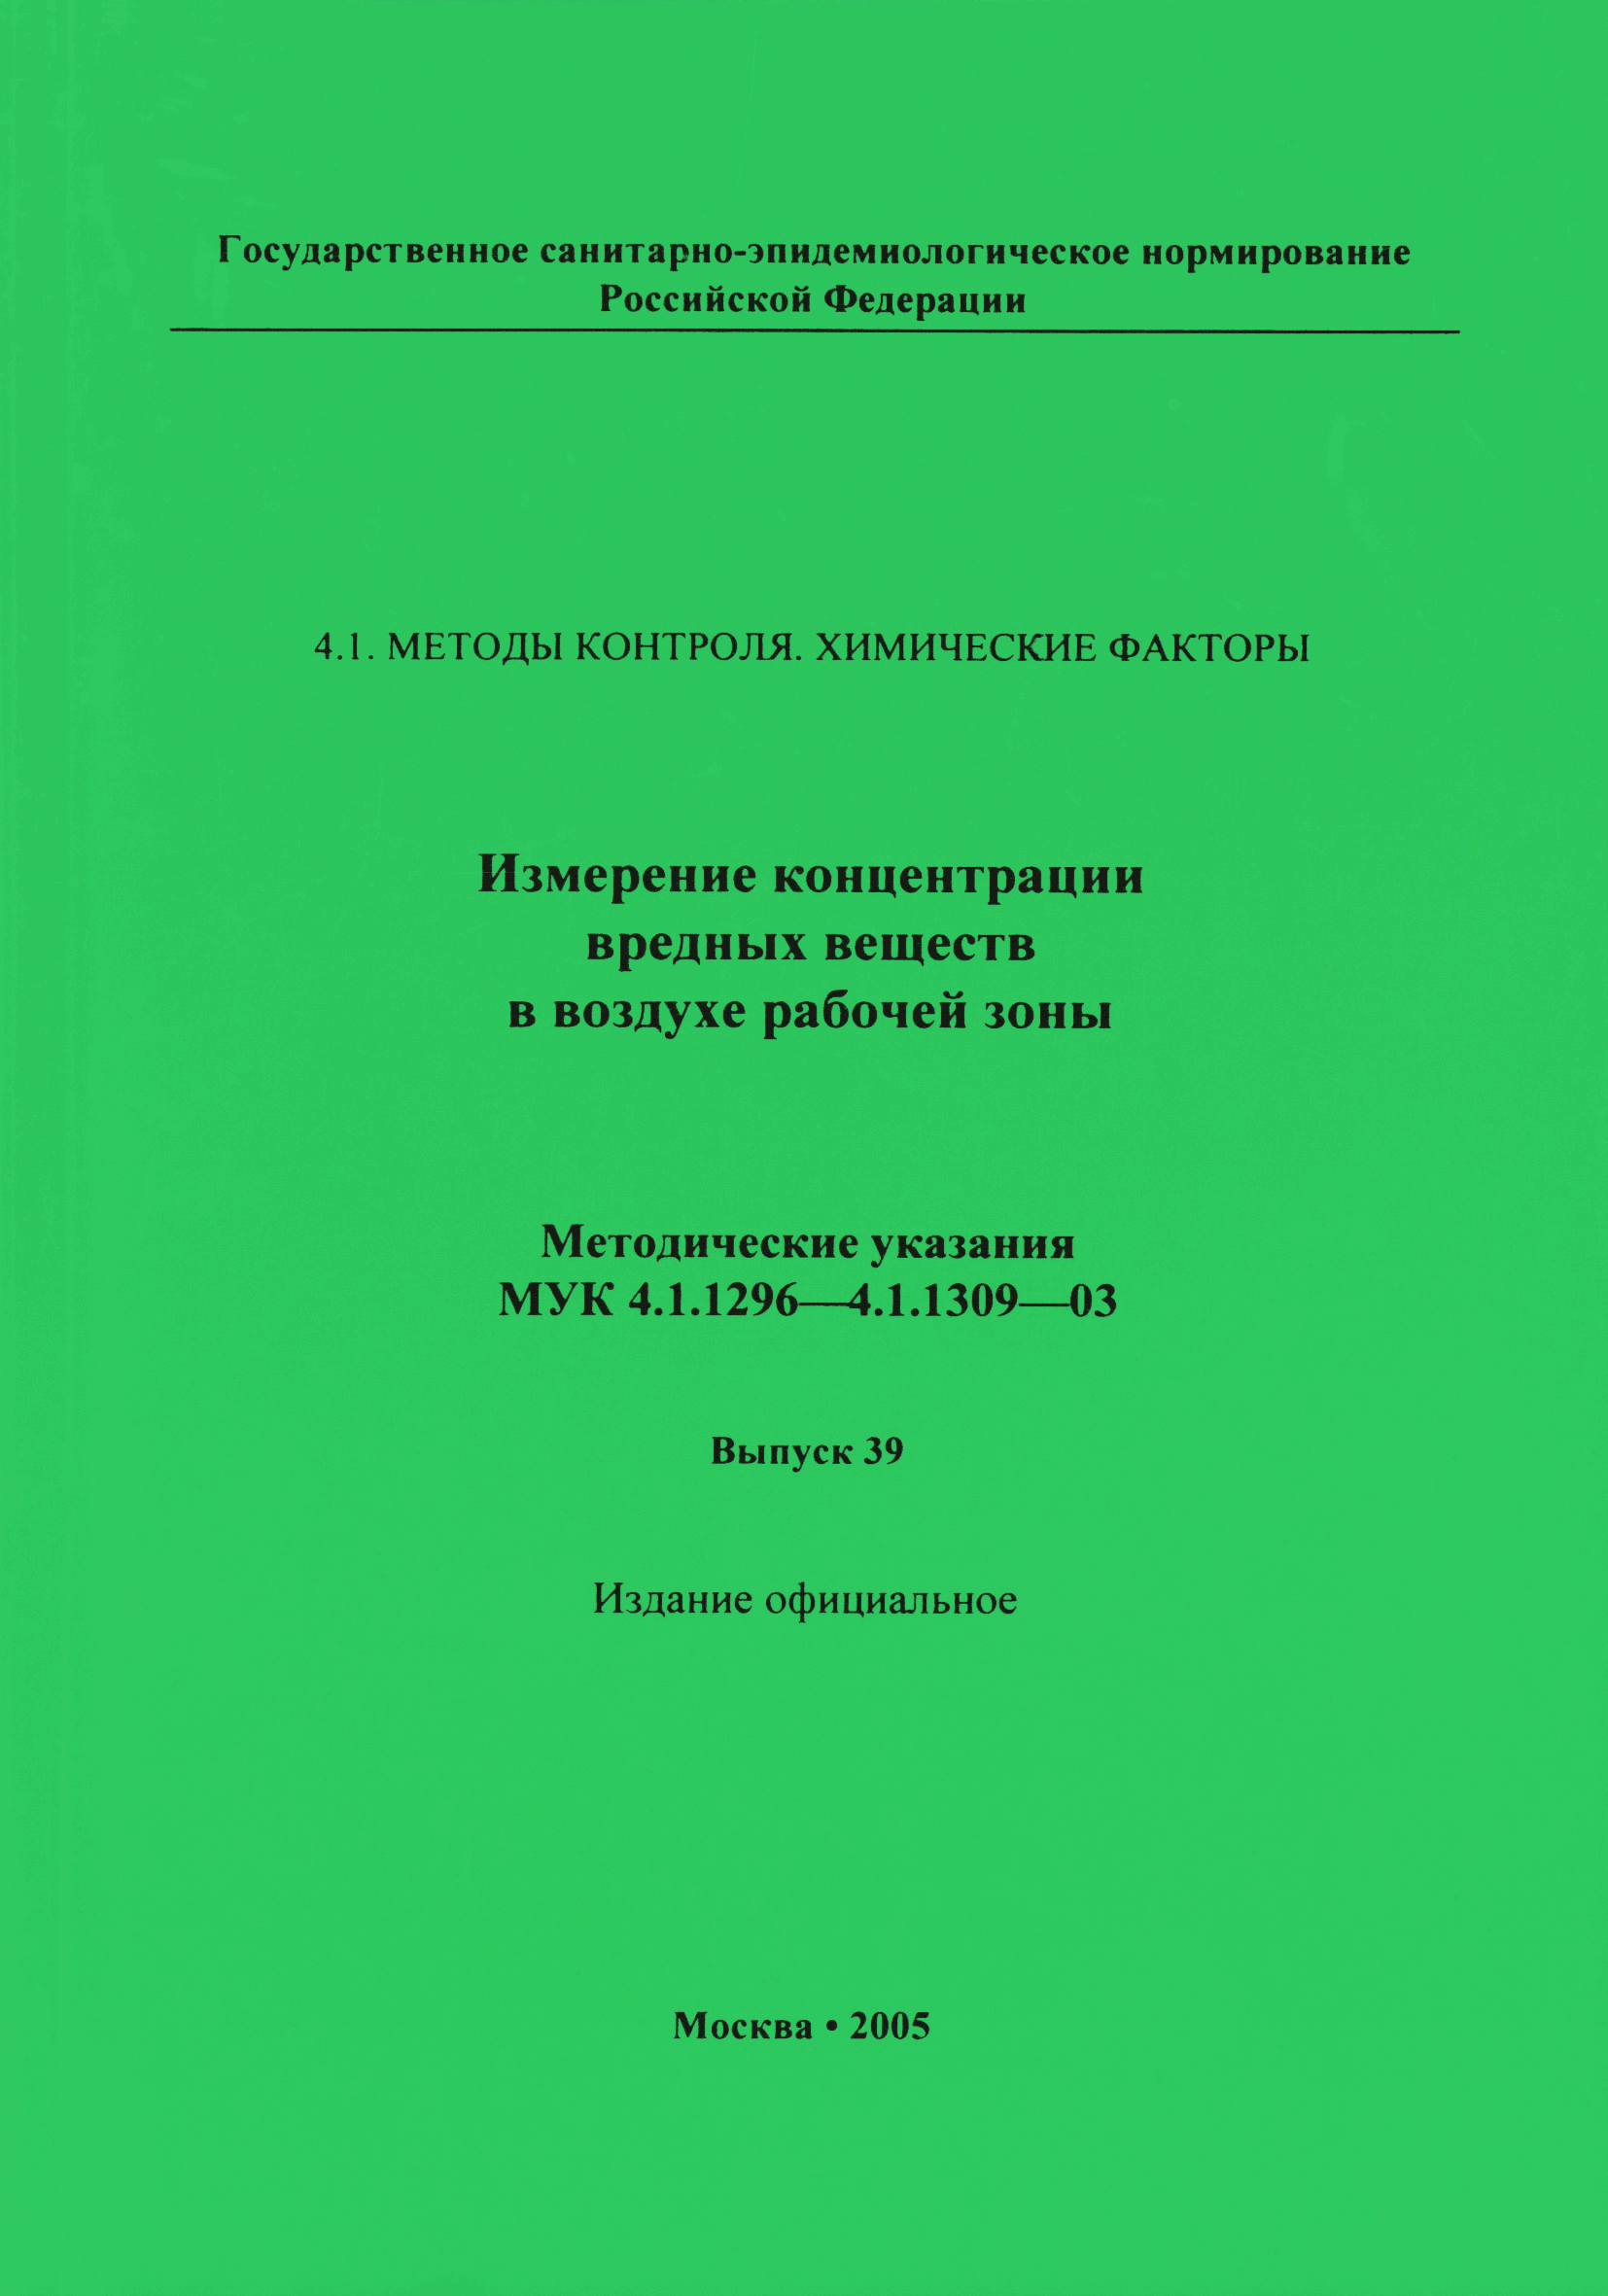 МУК 4.1.1309-03